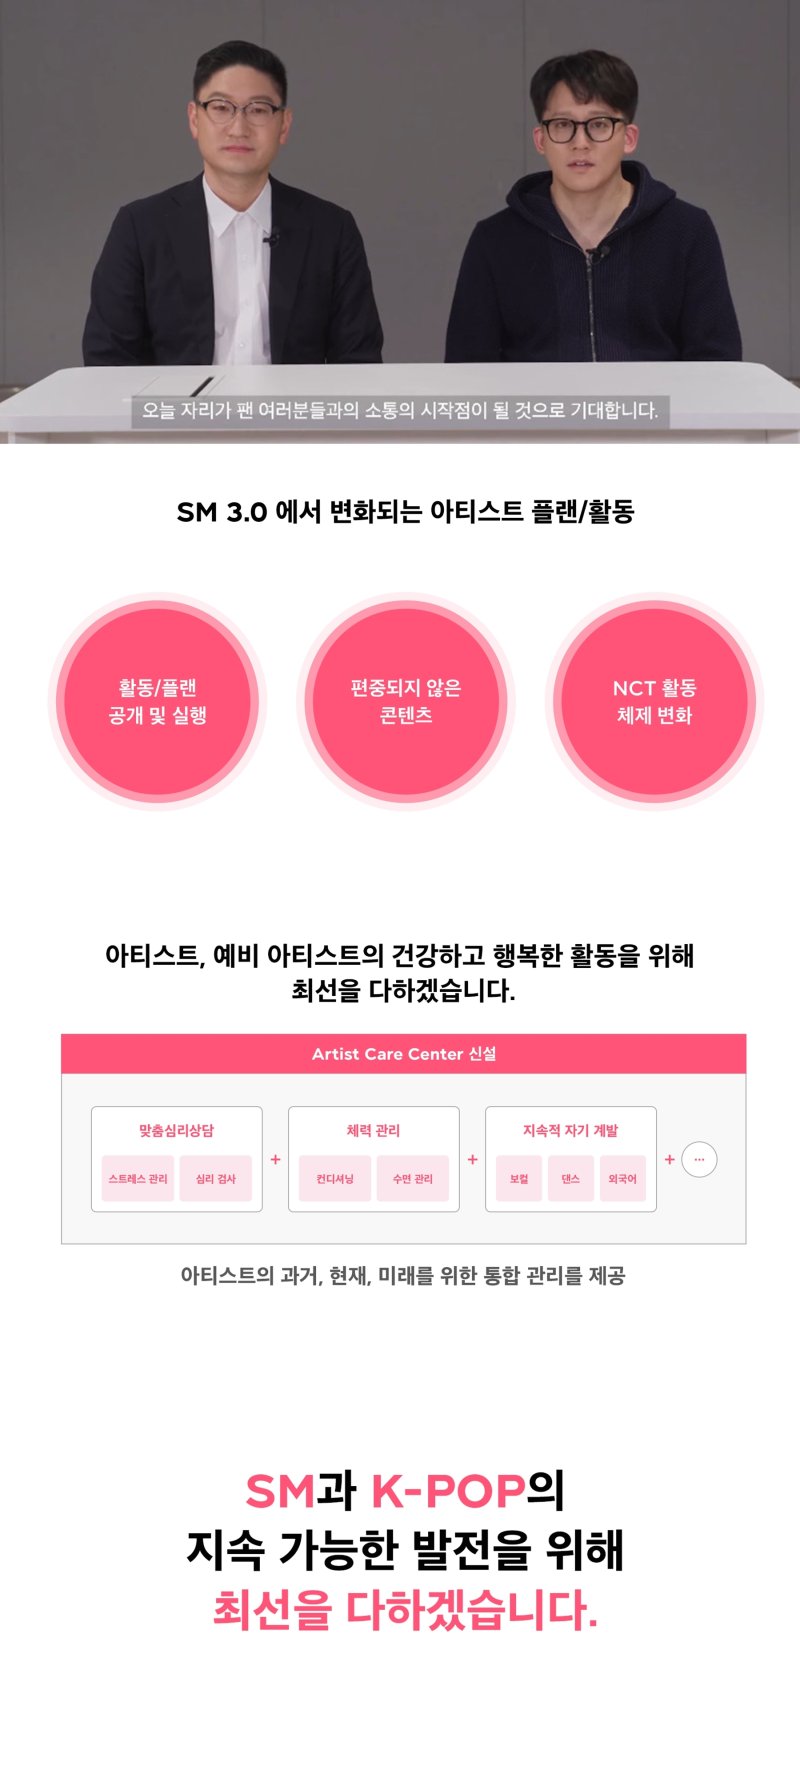 NCT 무한 확장 종료→아티스트 라이프 플래닝…SM 3.0 전략 공개